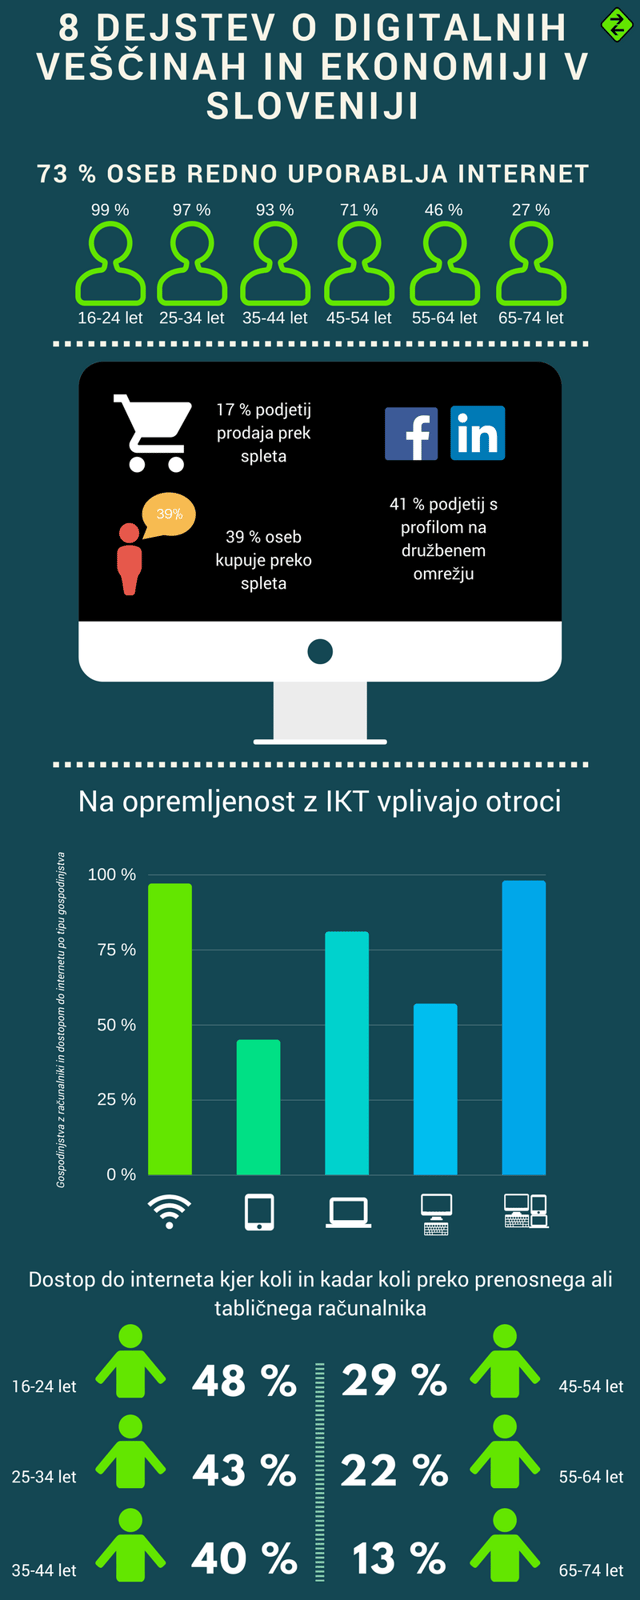 BLOG-8 dejstev o digitalnih veščinah in ekonomiji v Sloveniji - INFOGRAFIKA 1.png